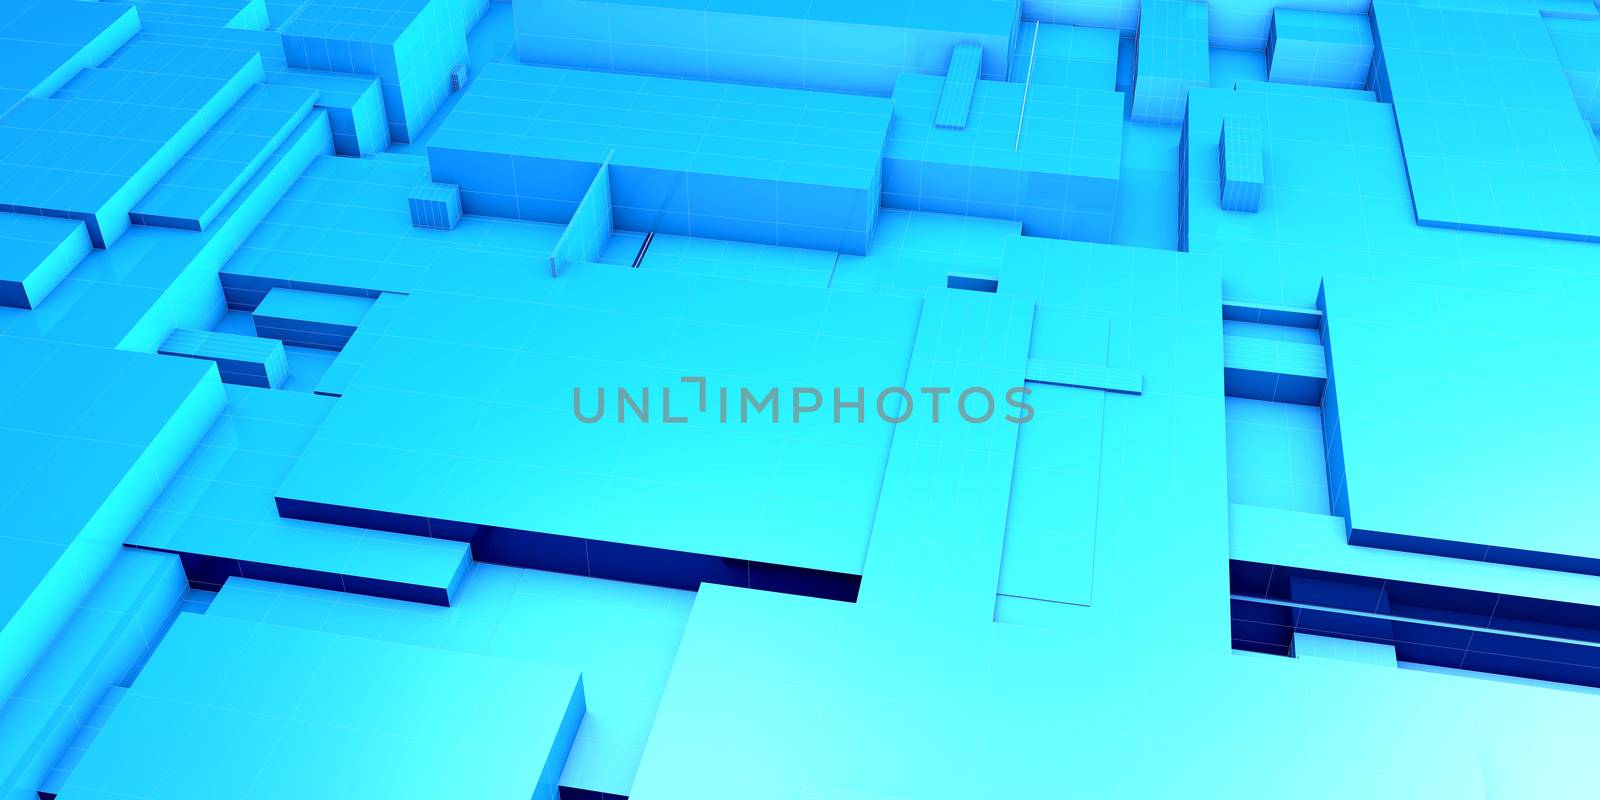 Digital Building Blocks by kentoh